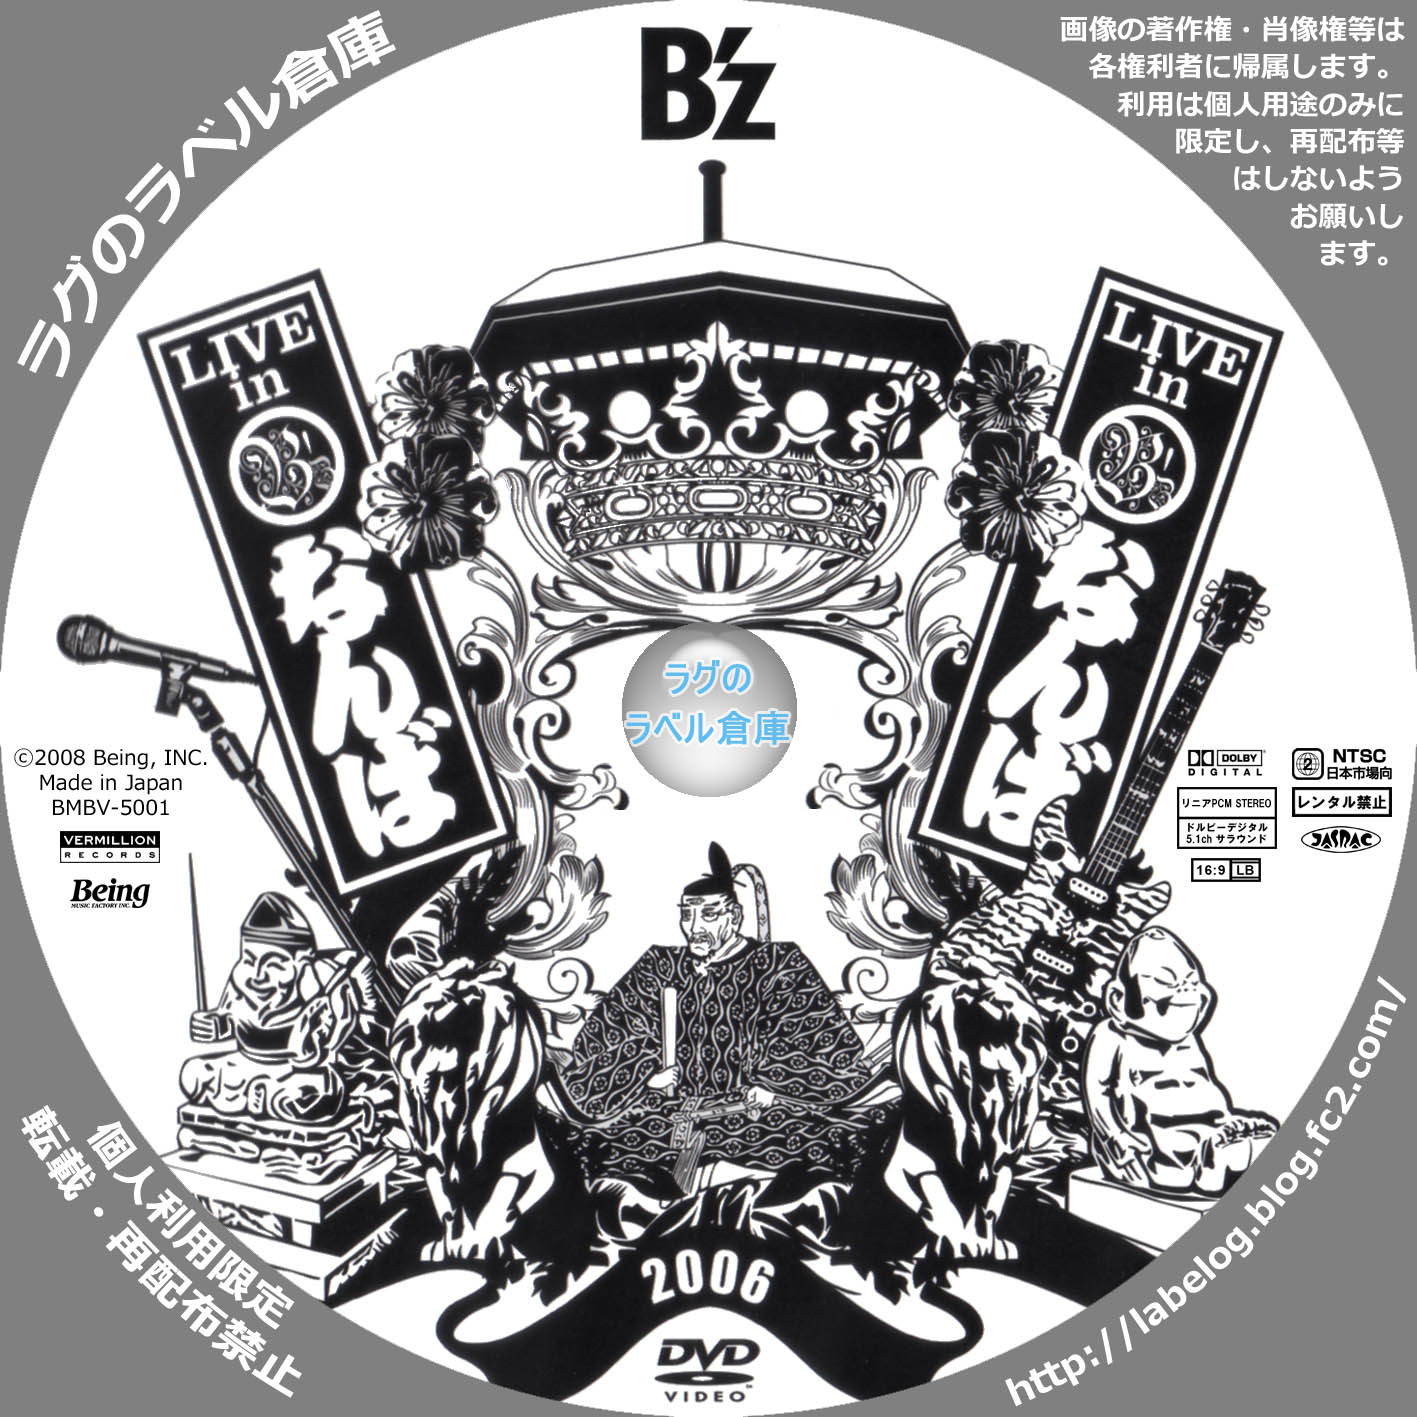 B'z LIVE in なんば | ラグの CD / DVD / BD 自作ラベル倉庫